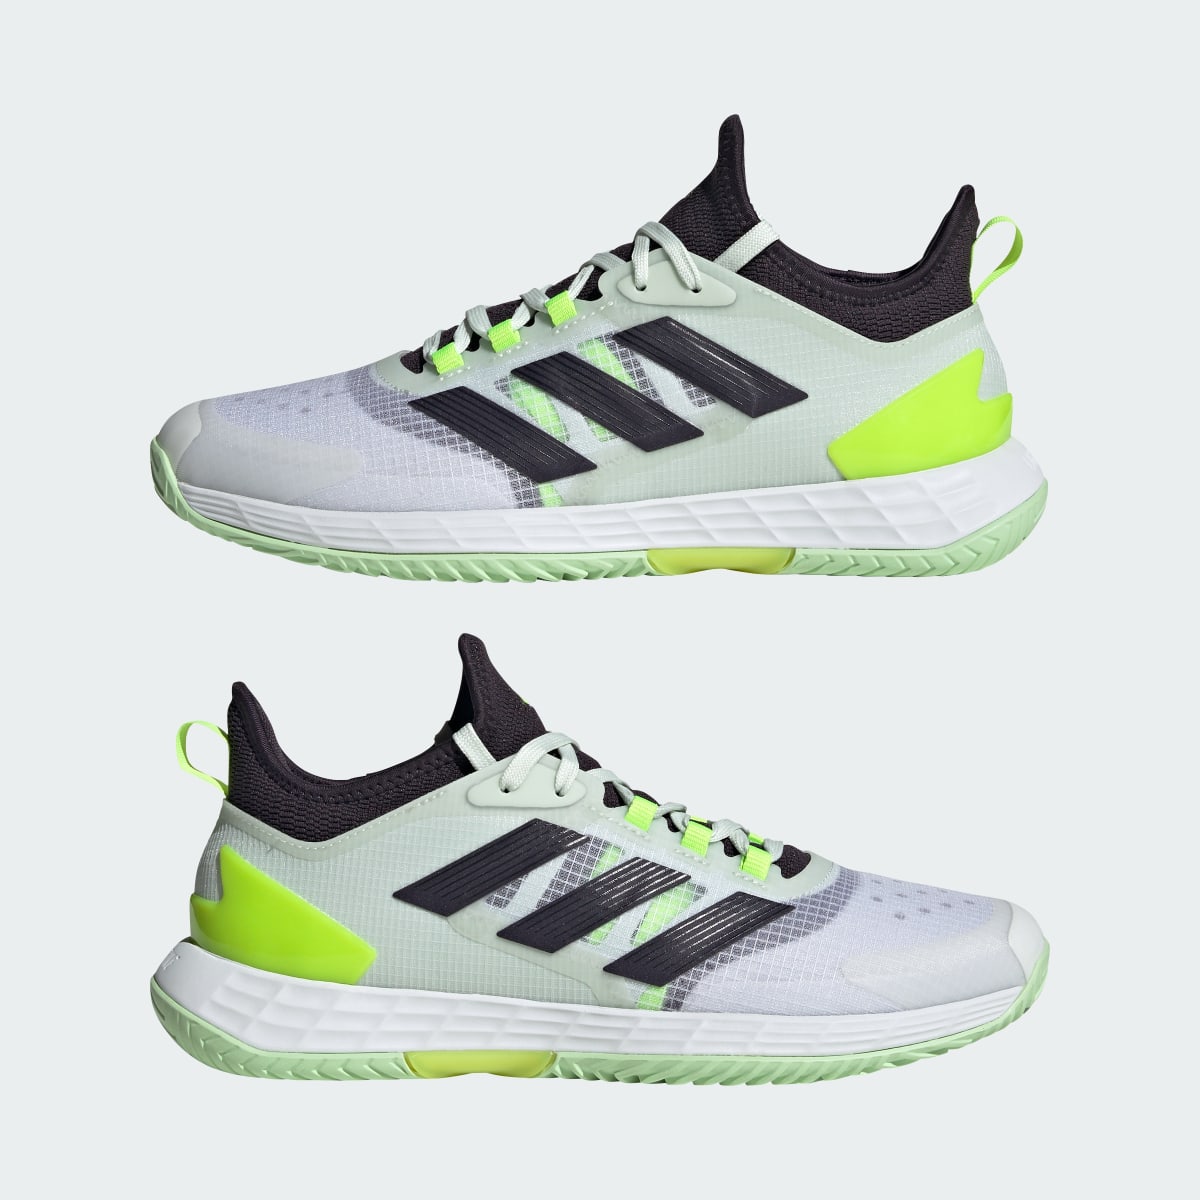 Adidas Adizero Ubersonic 4.1 Tennis Shoes. 11